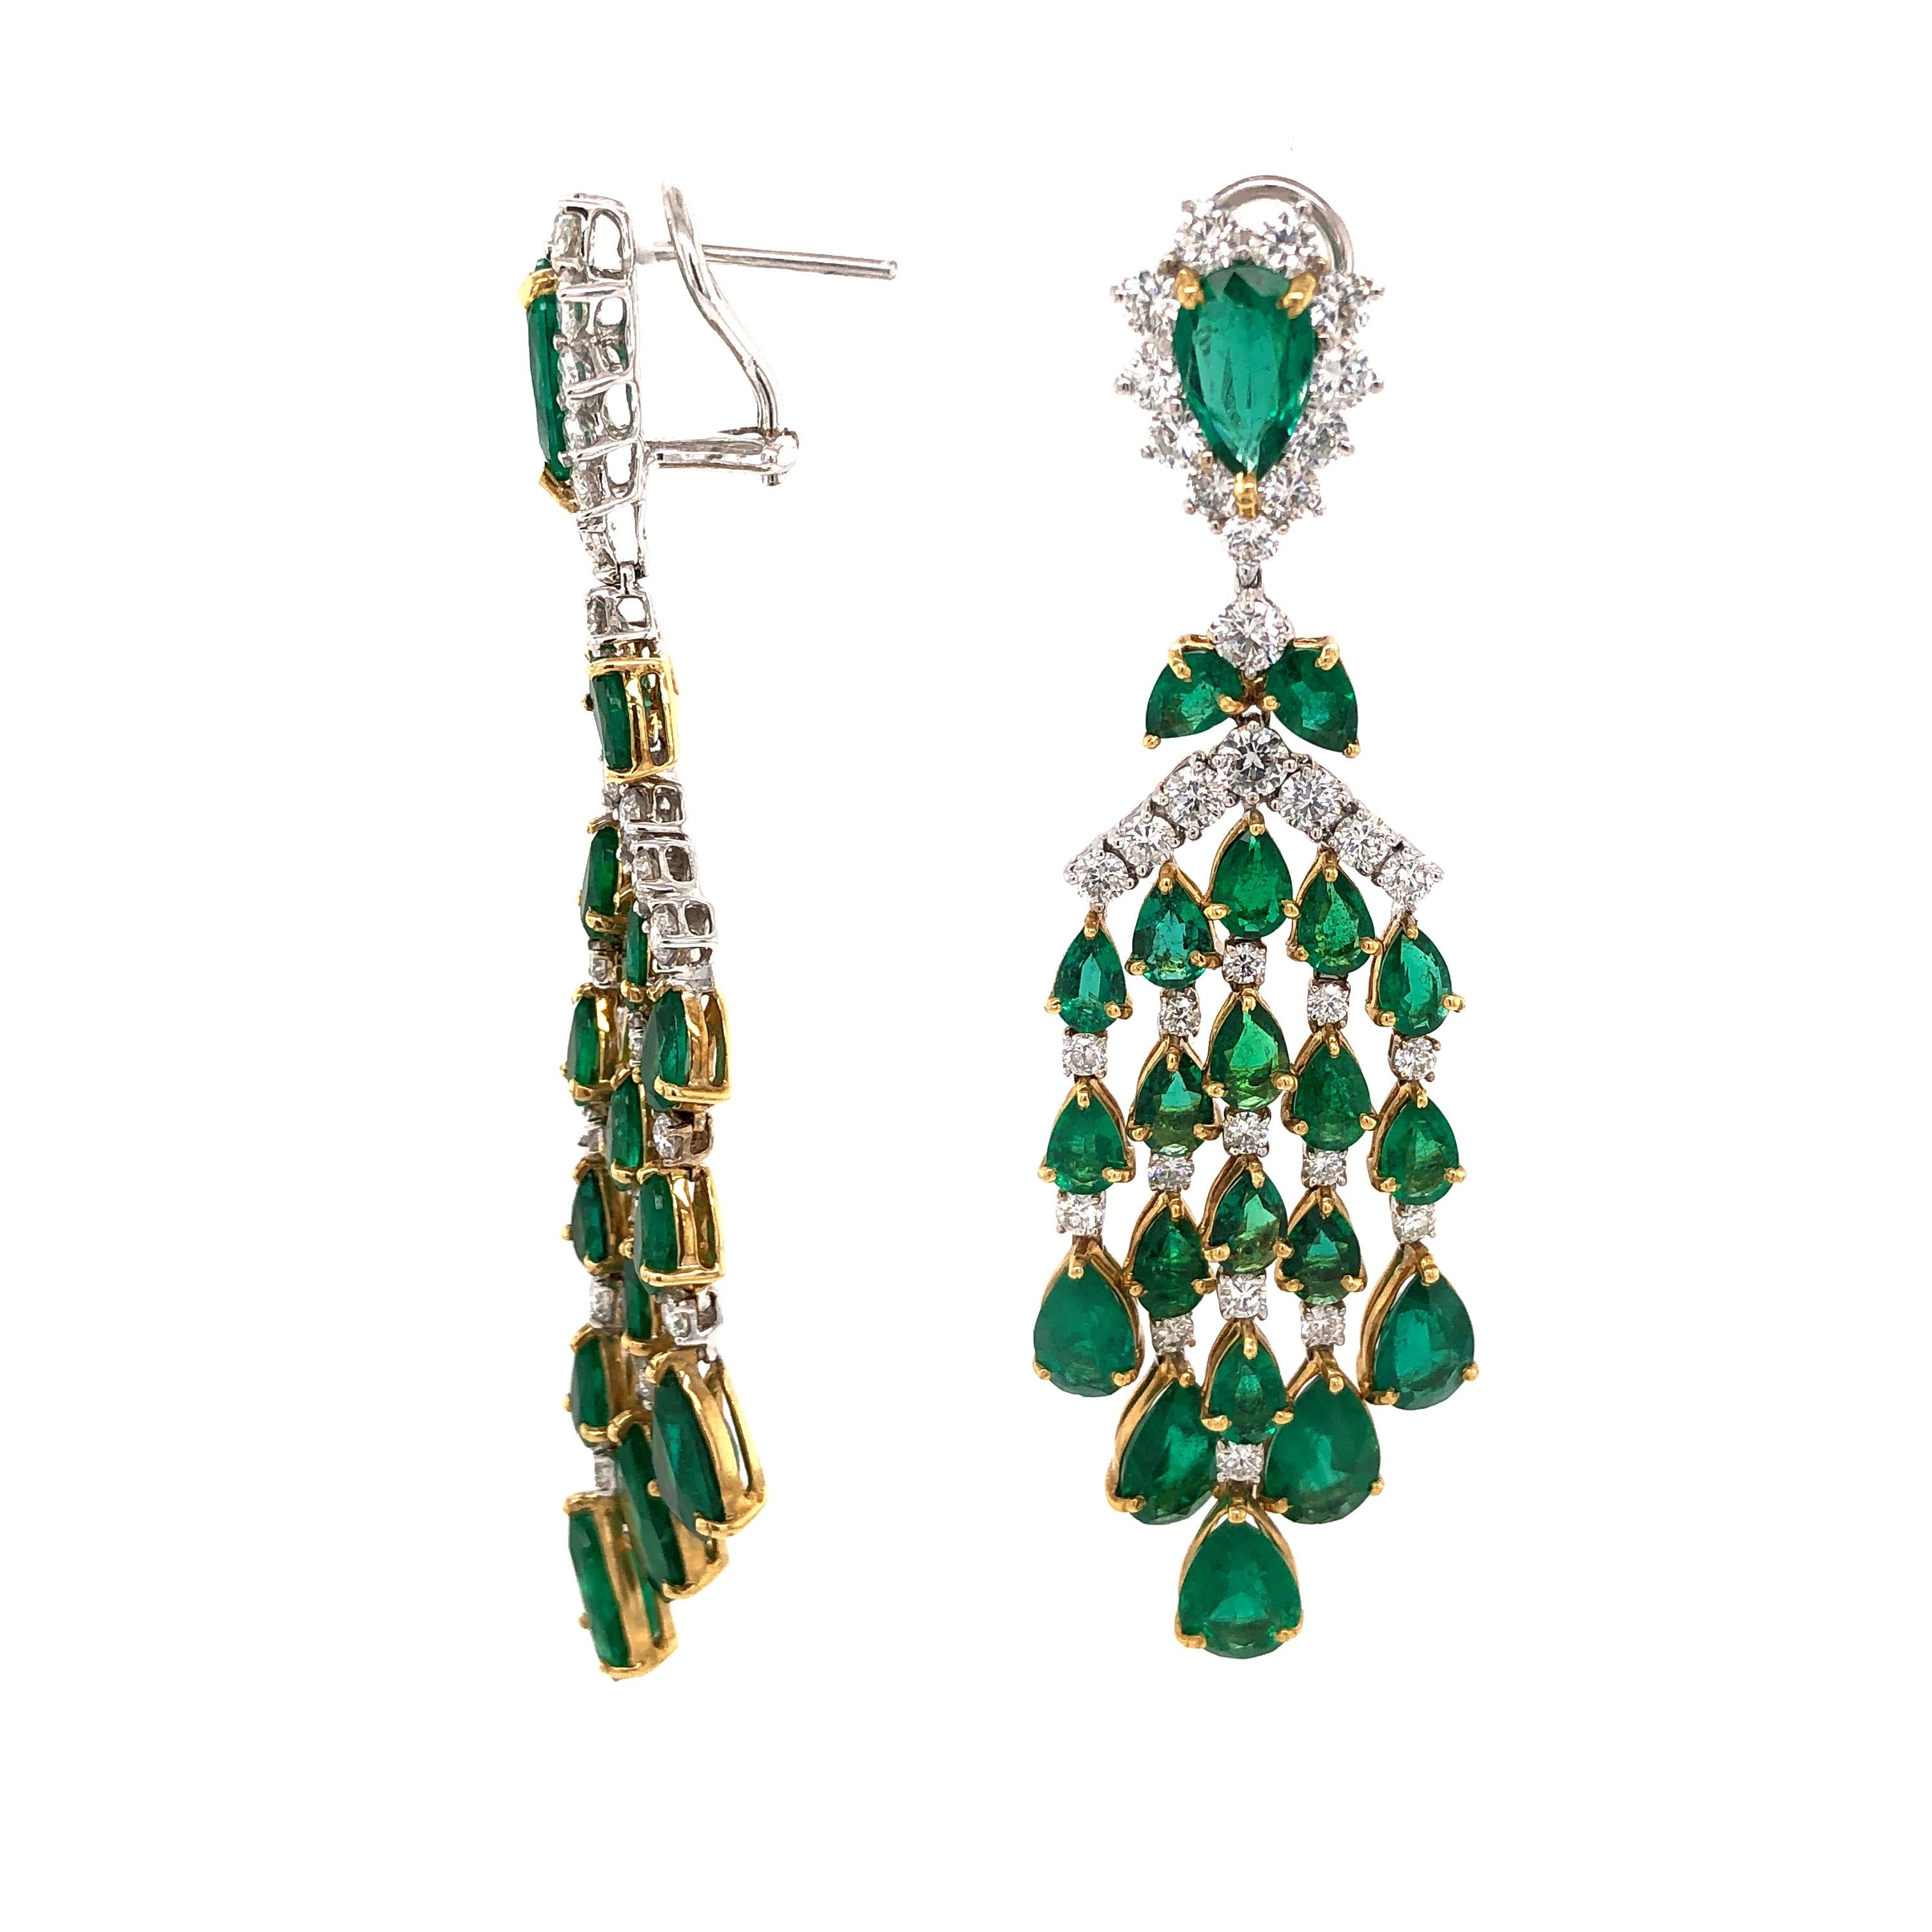 Contemporary Zambian Pear Cut Emeralds 23.82 carat Diamonds Chandelier 18k Gold Earrings For Sale